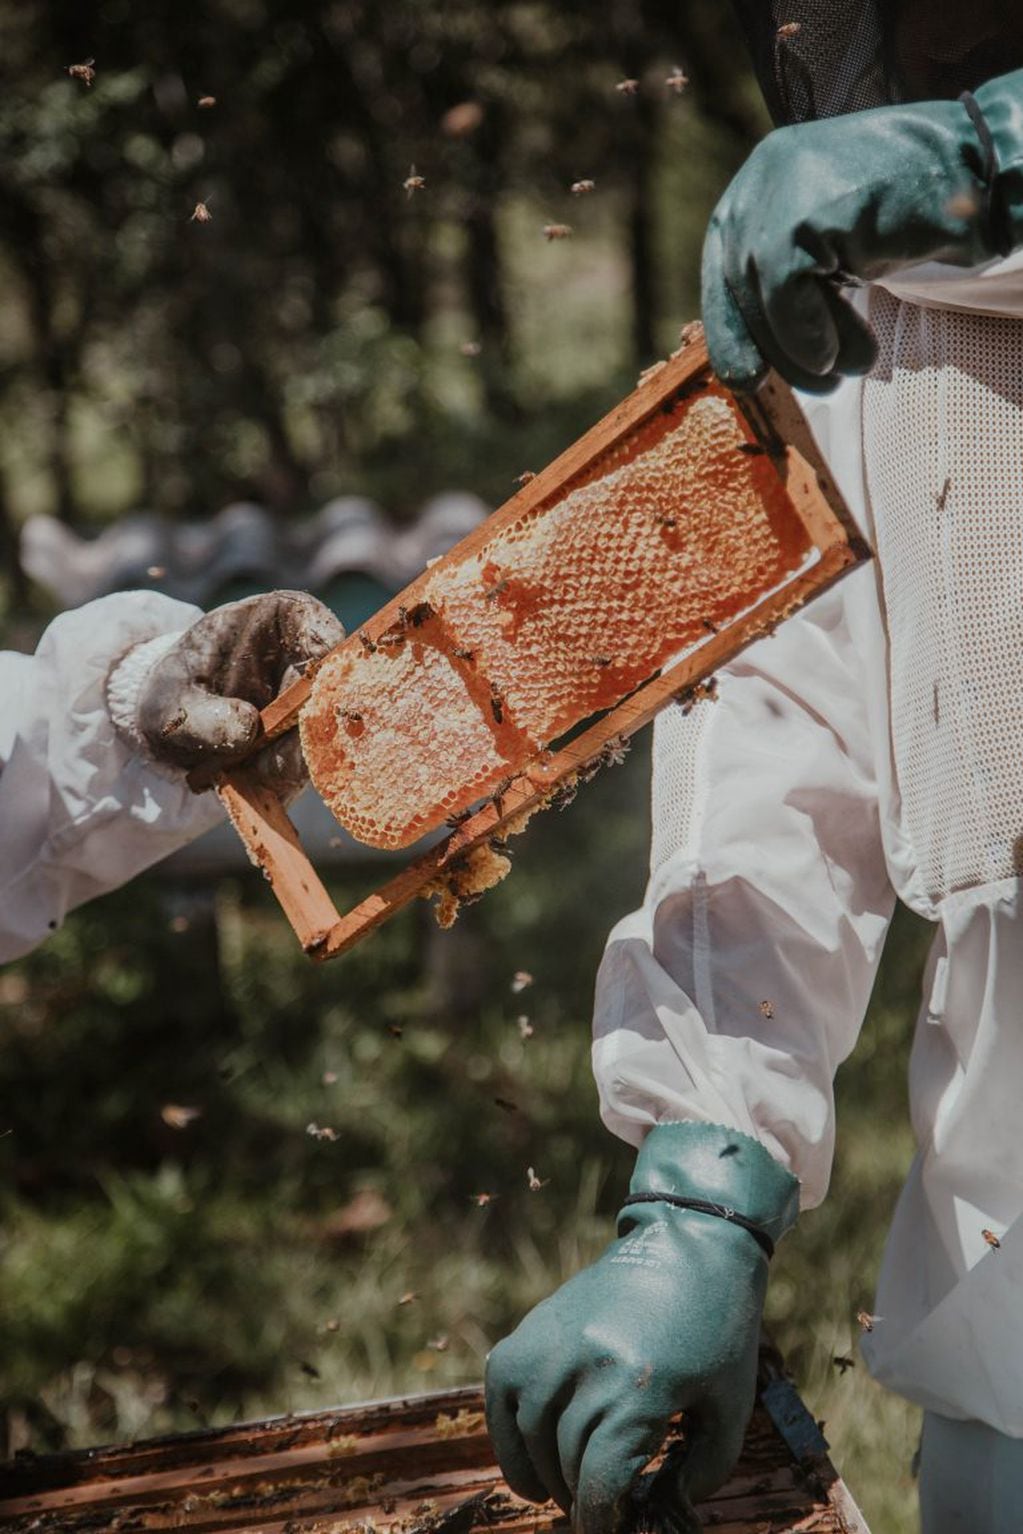 Industria apicola - arthur brognoli - pexels